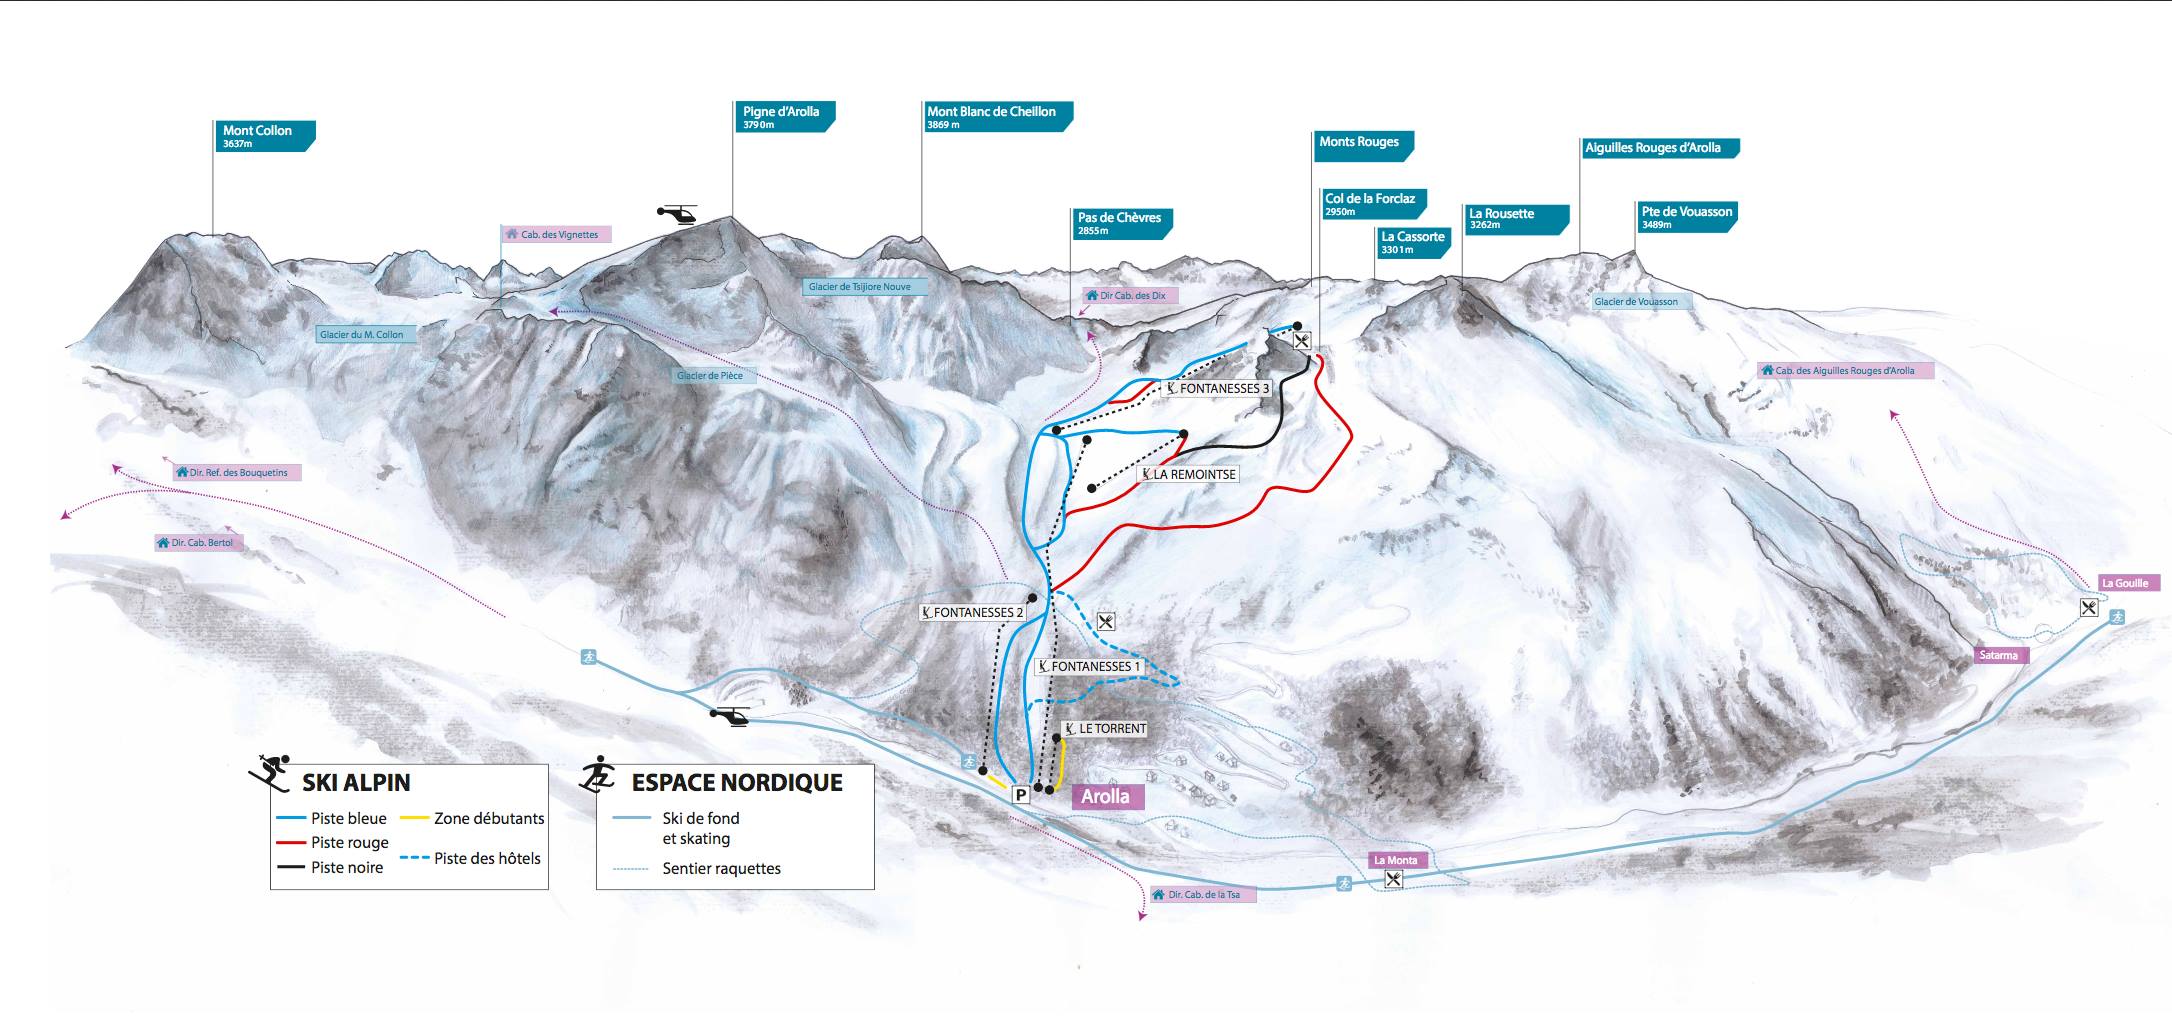 Arolla ski map, ©Wasabidesign 2013